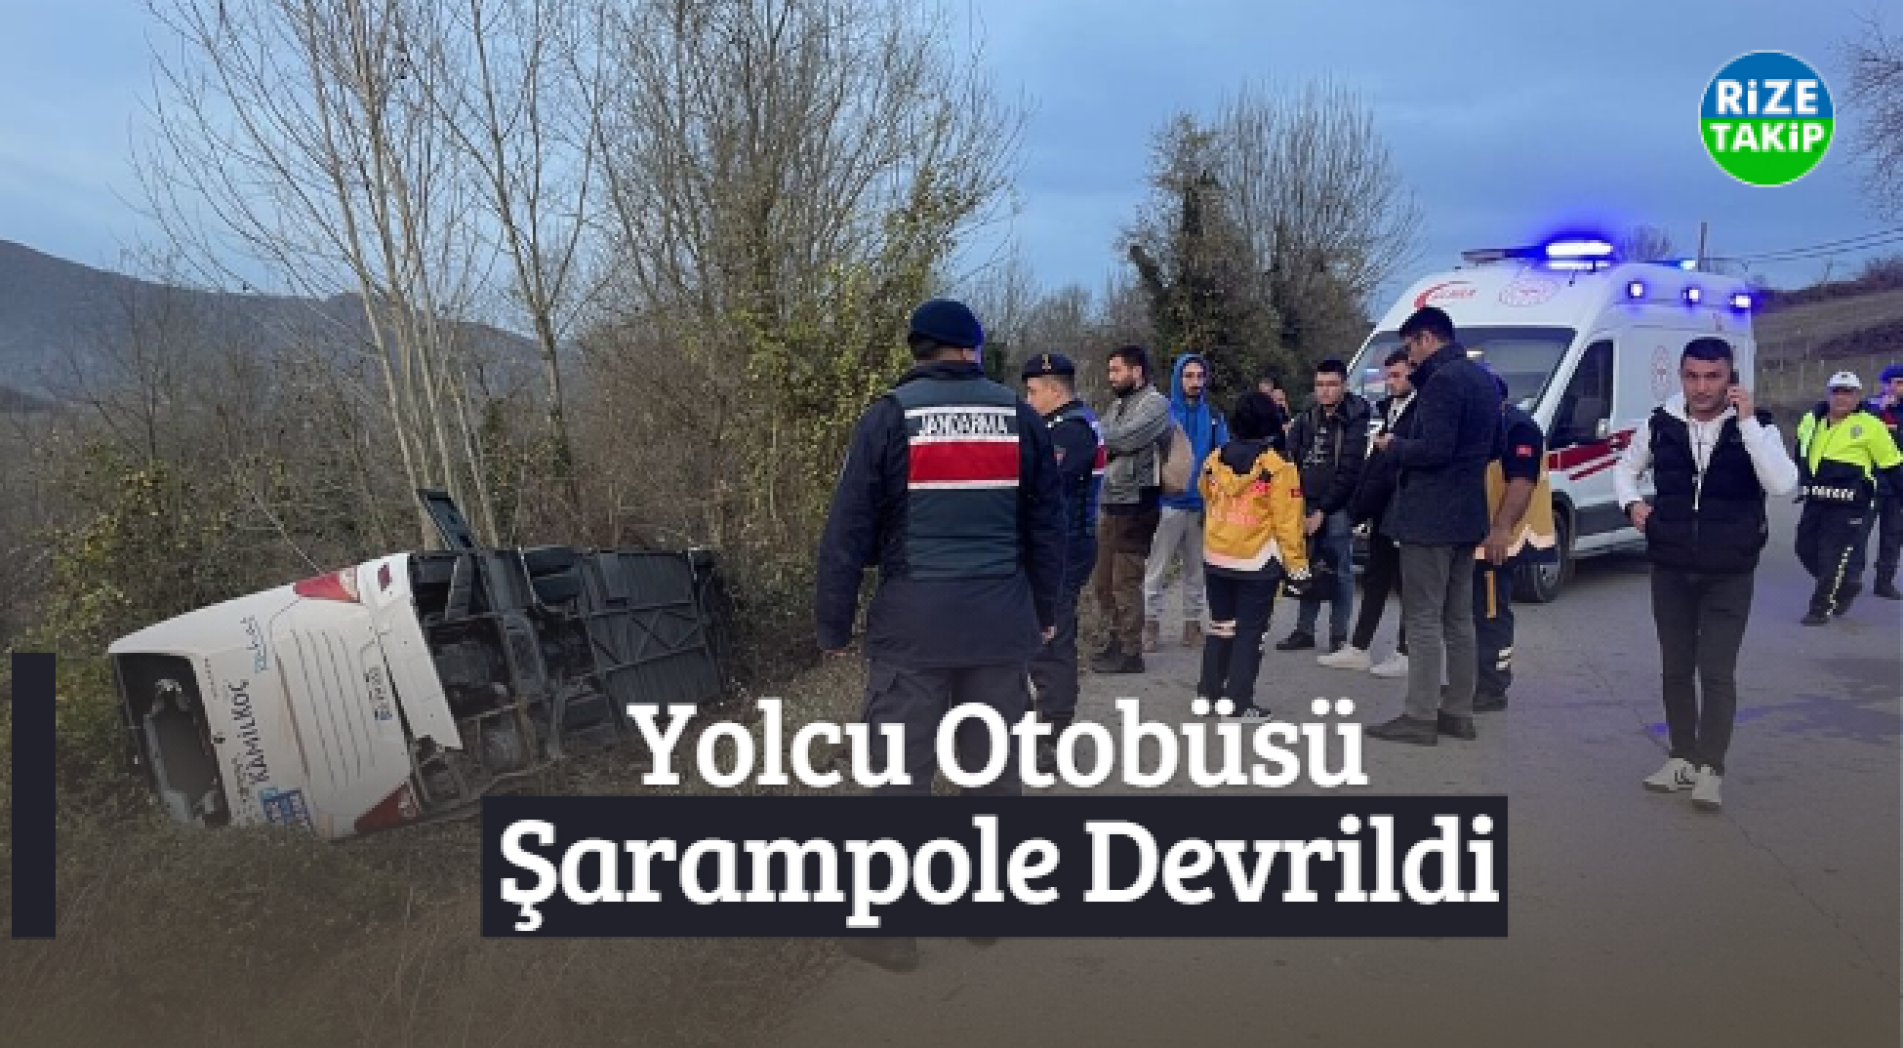 Rize'den Zonguldak'a Giden Yolcu Otobüsü Şarampole Devrildi: 40 Yaralı